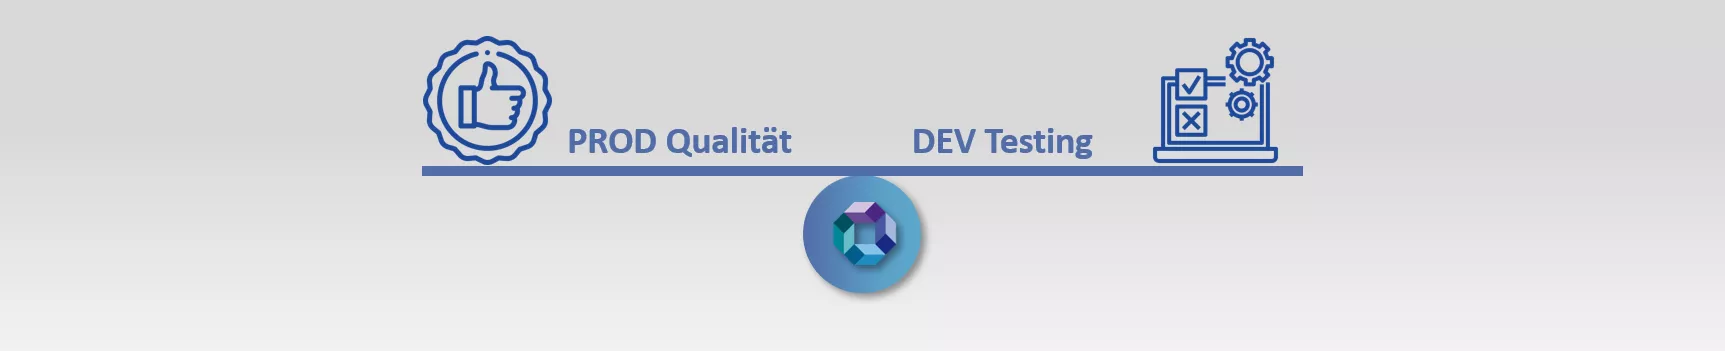 drei-basics-zum-bi-quality-management-produktqualitaet-vs-testing